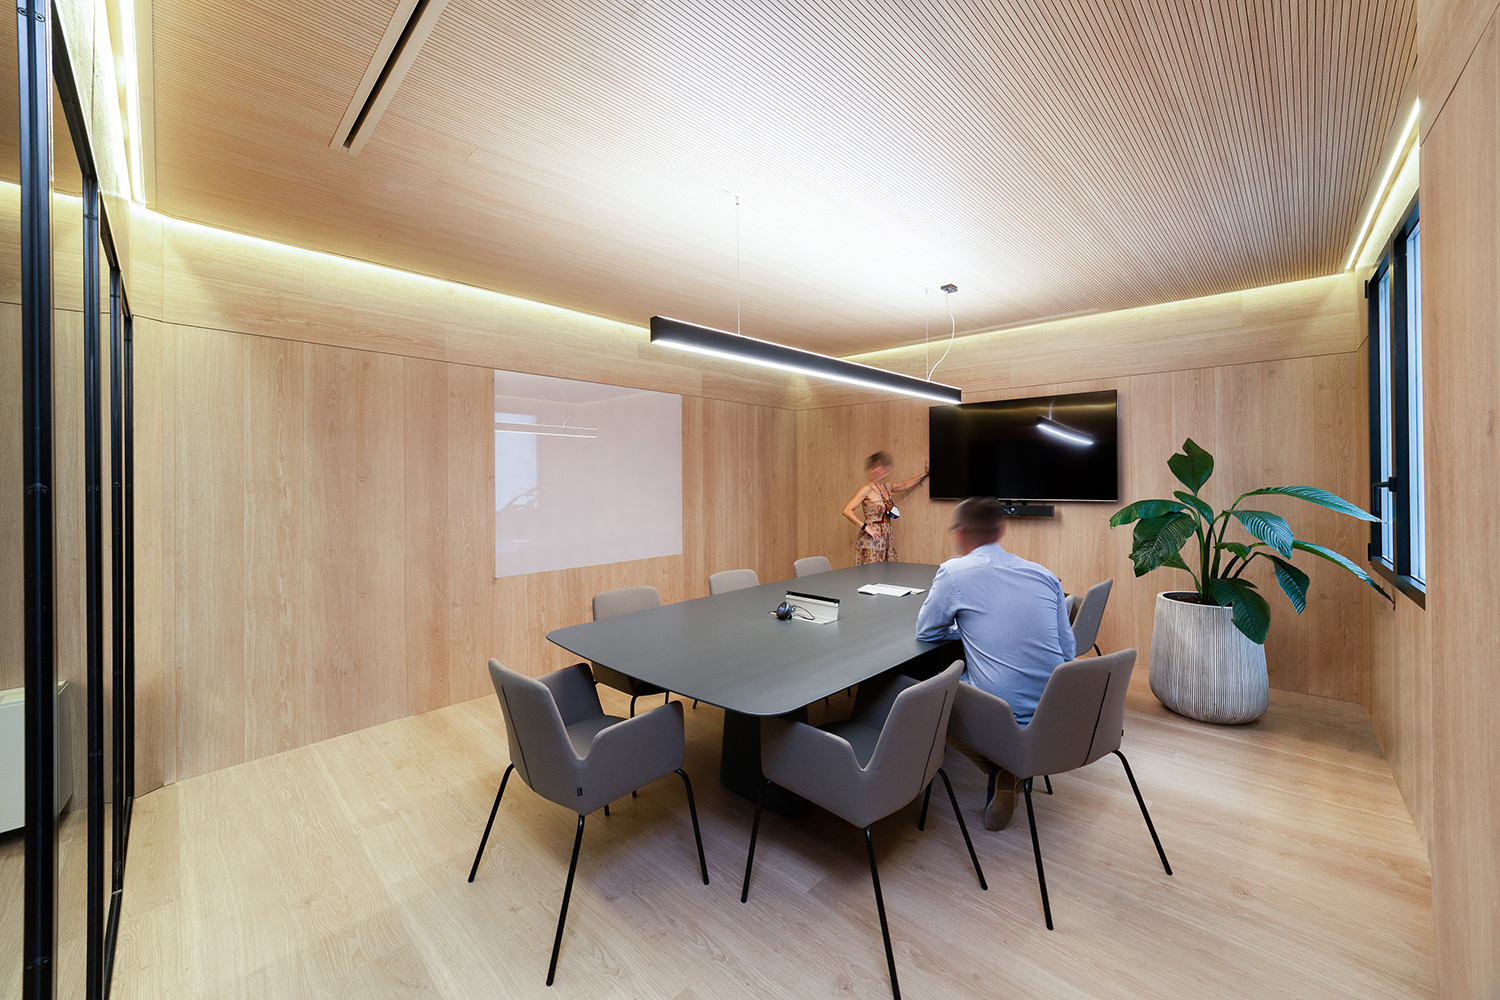 Soluciones acústicas decorativas para crear espacios más confortables -  mimub